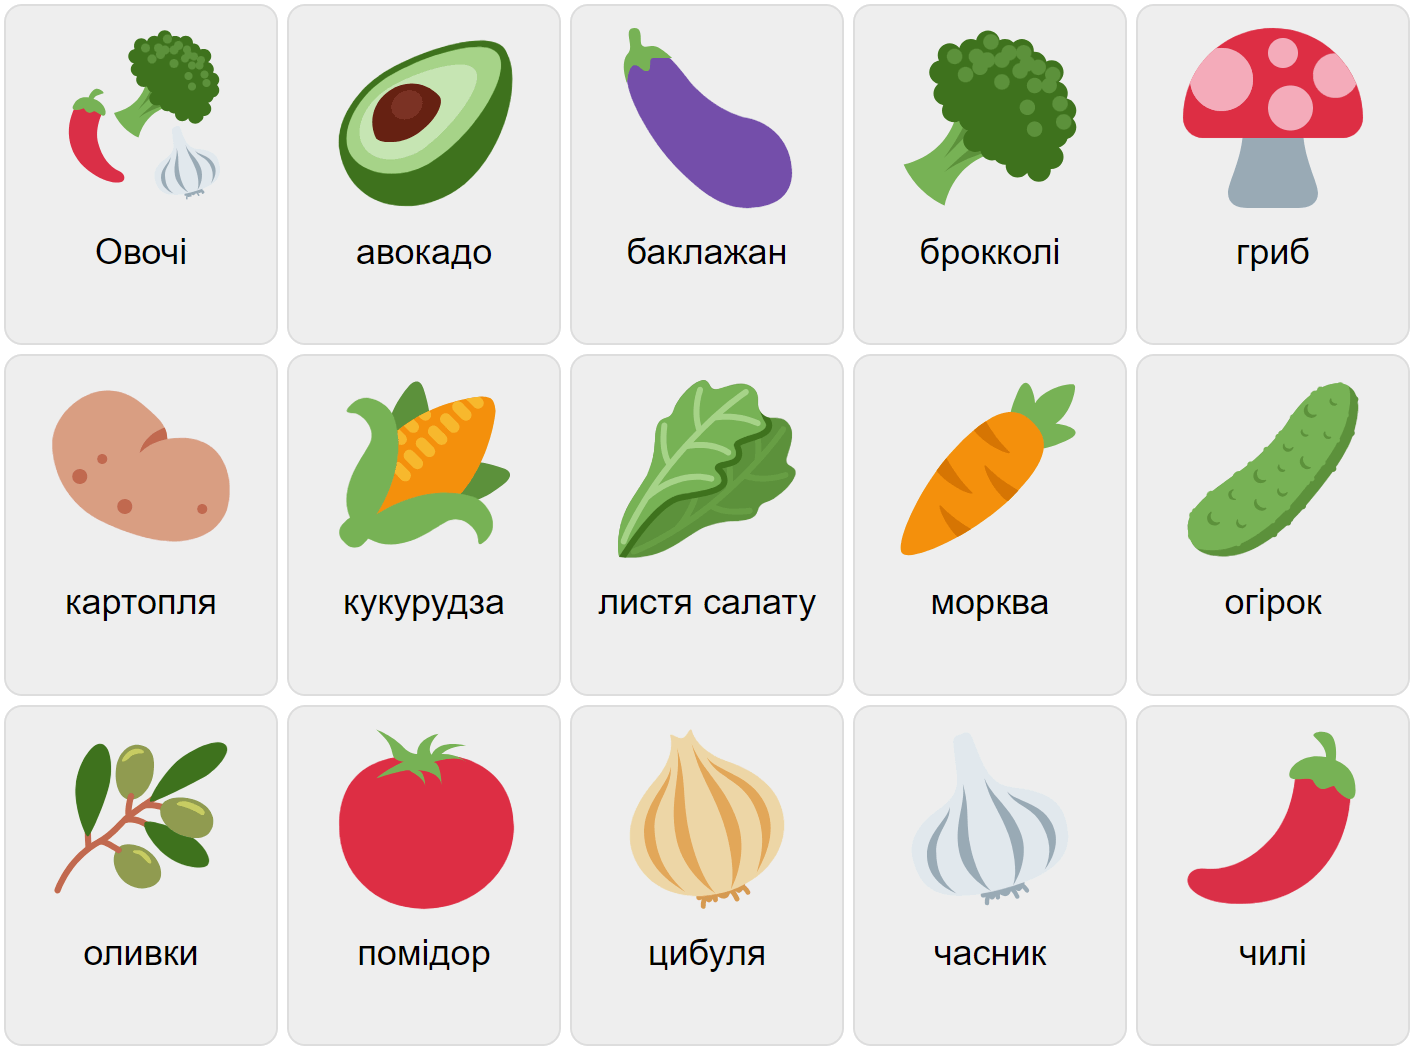 Vegetables in Ukrainian